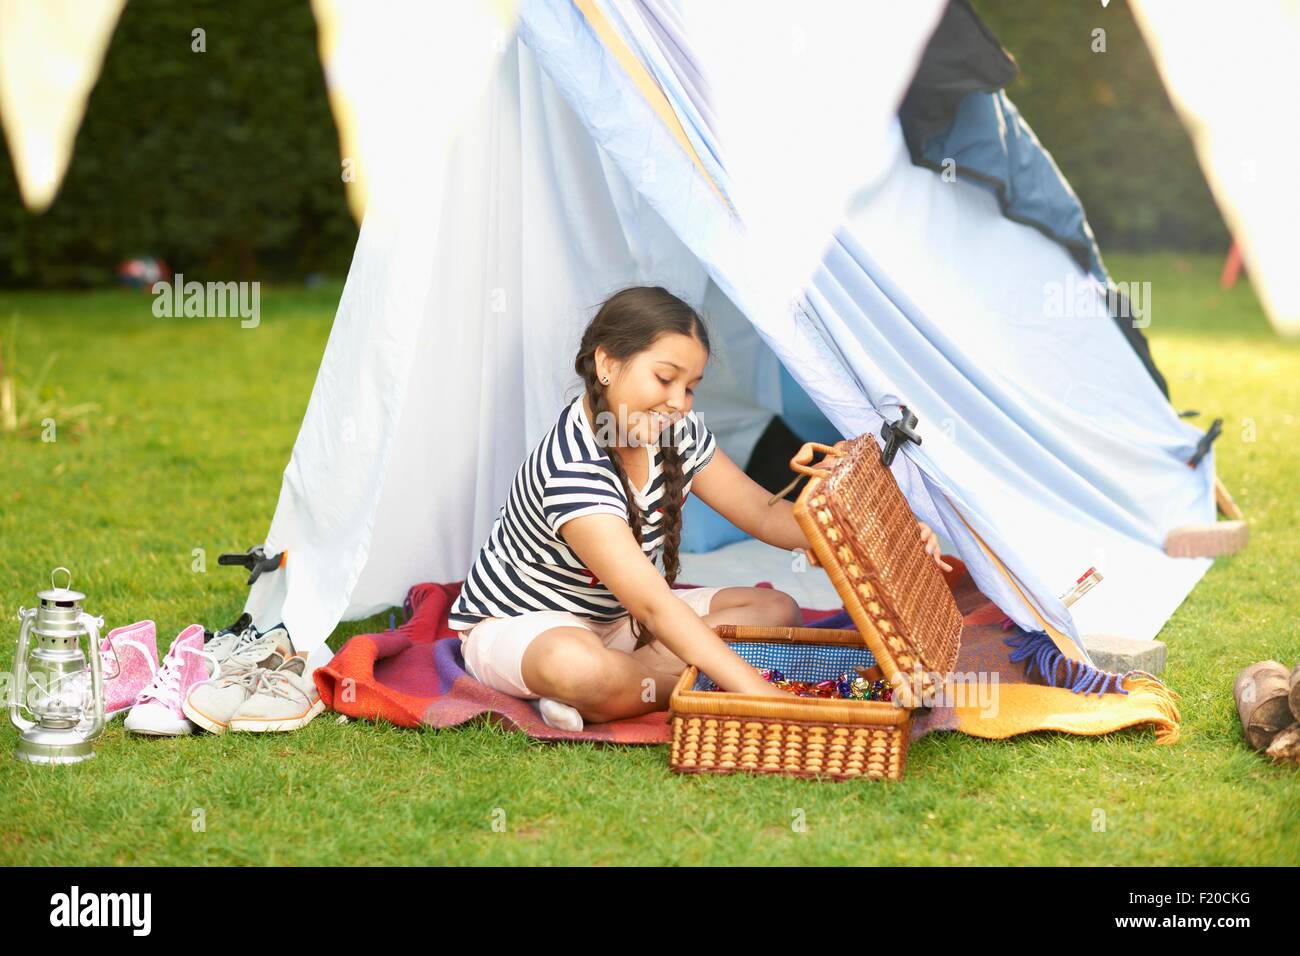 La ragazza lo svuotamento cestino da picnic nella parte anteriore della tenda casalinghi in giardino Foto Stock